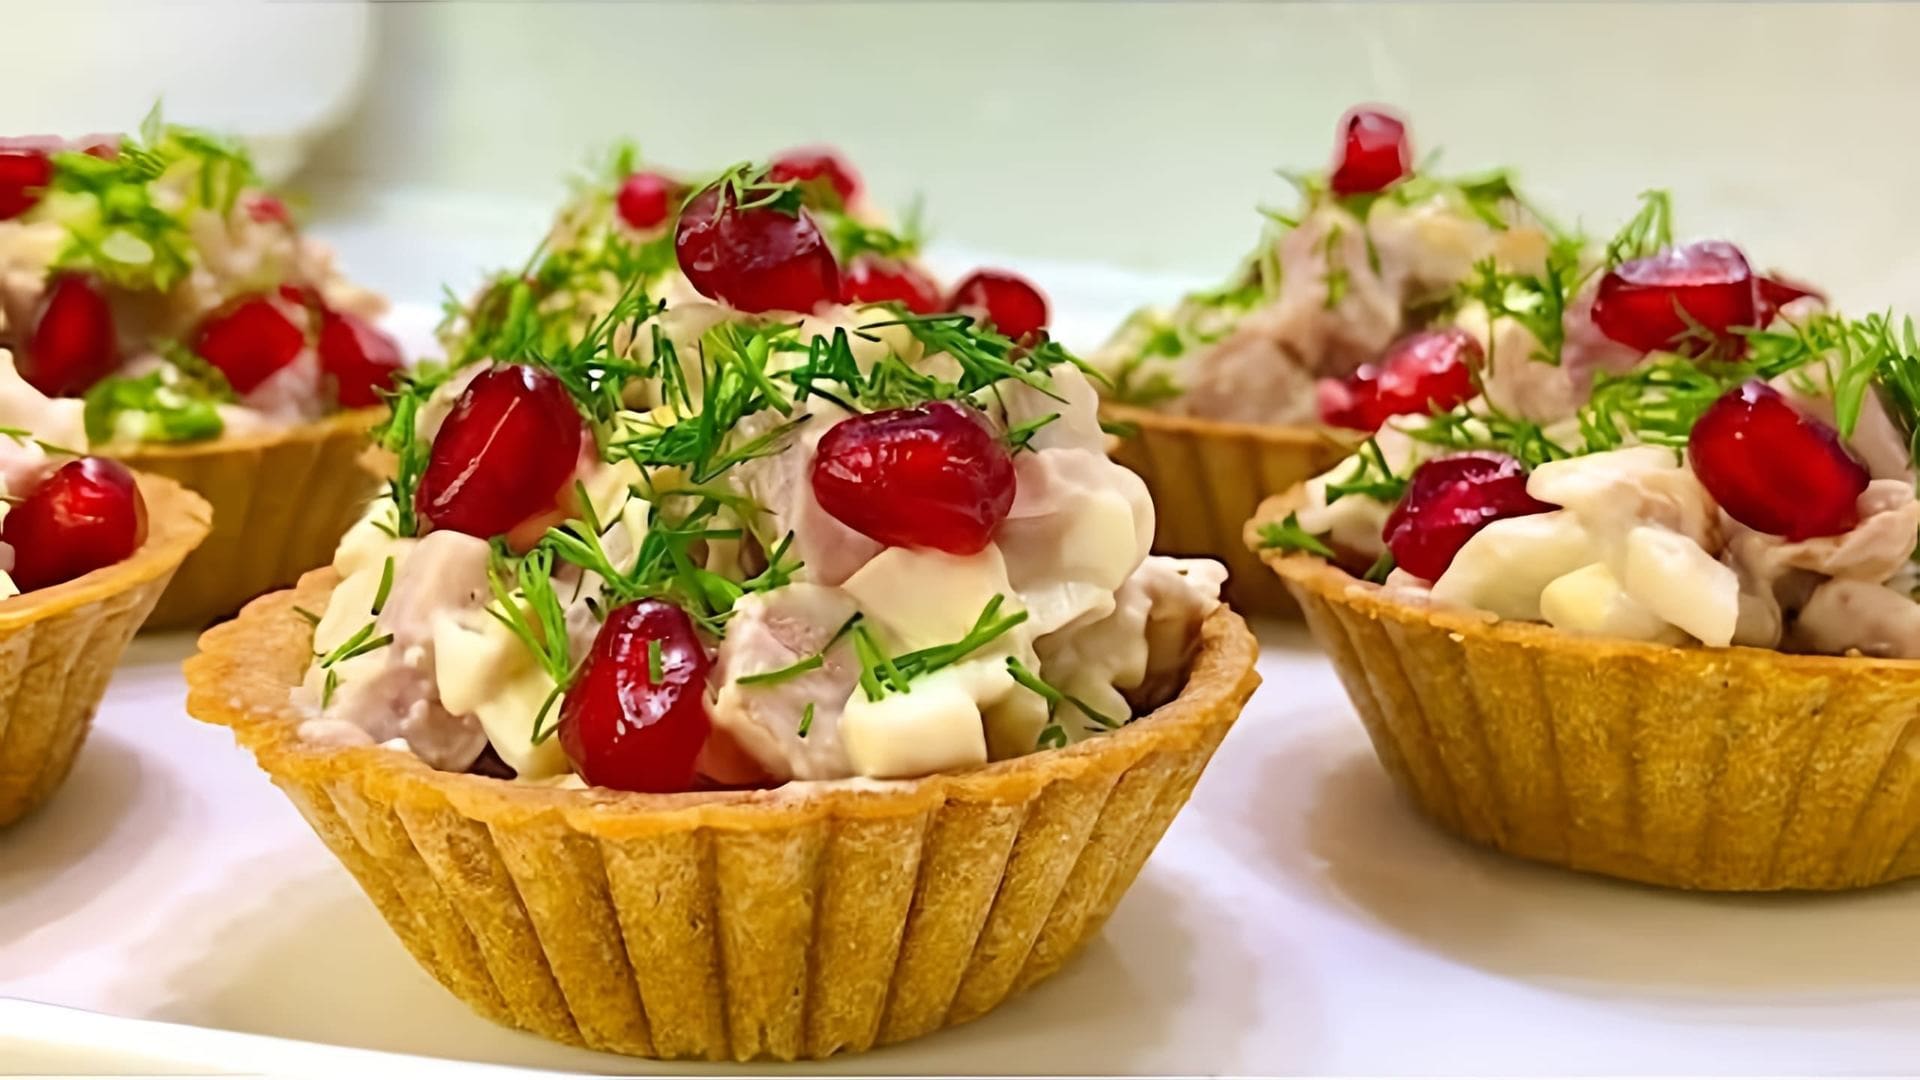 Очень Вкусный Салат в тарталетках на Праздничный Стол - это видео-ролик, который демонстрирует процесс приготовления вкусного и оригинального салата в тарталетках